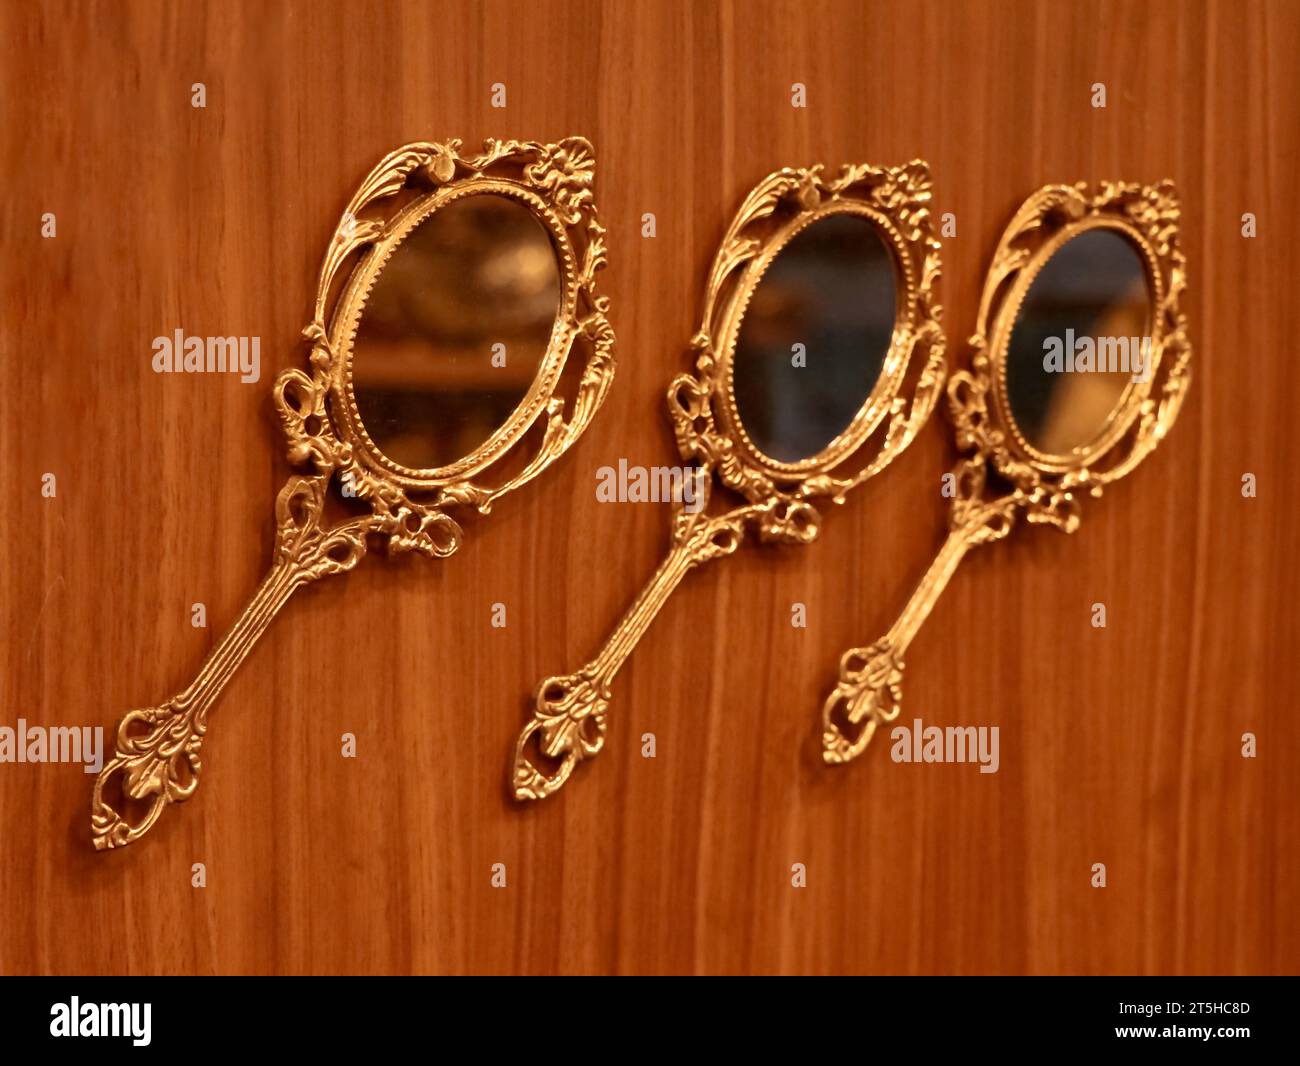 trois miroirs à main ronds dorés vintage fabriqués en bronze conservés pour être exposés sur un mur en bois à l'intérieur d'une boutique traditionnelle d'artisanat et de souvenirs Banque D'Images